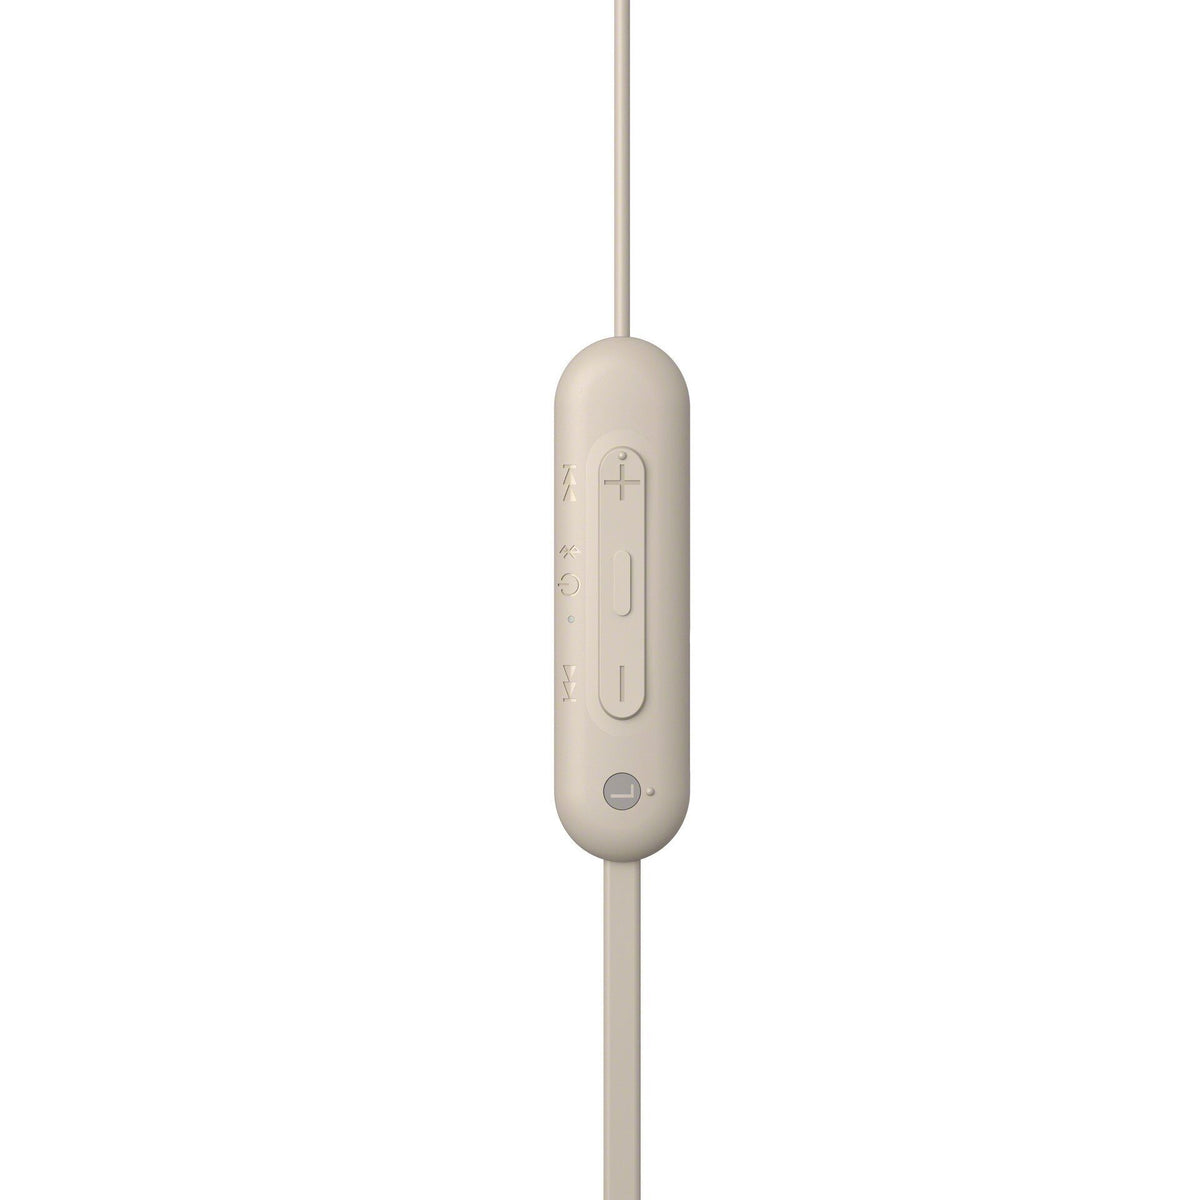 Bezdrátová sluchátka Sony WI-C100, šedá